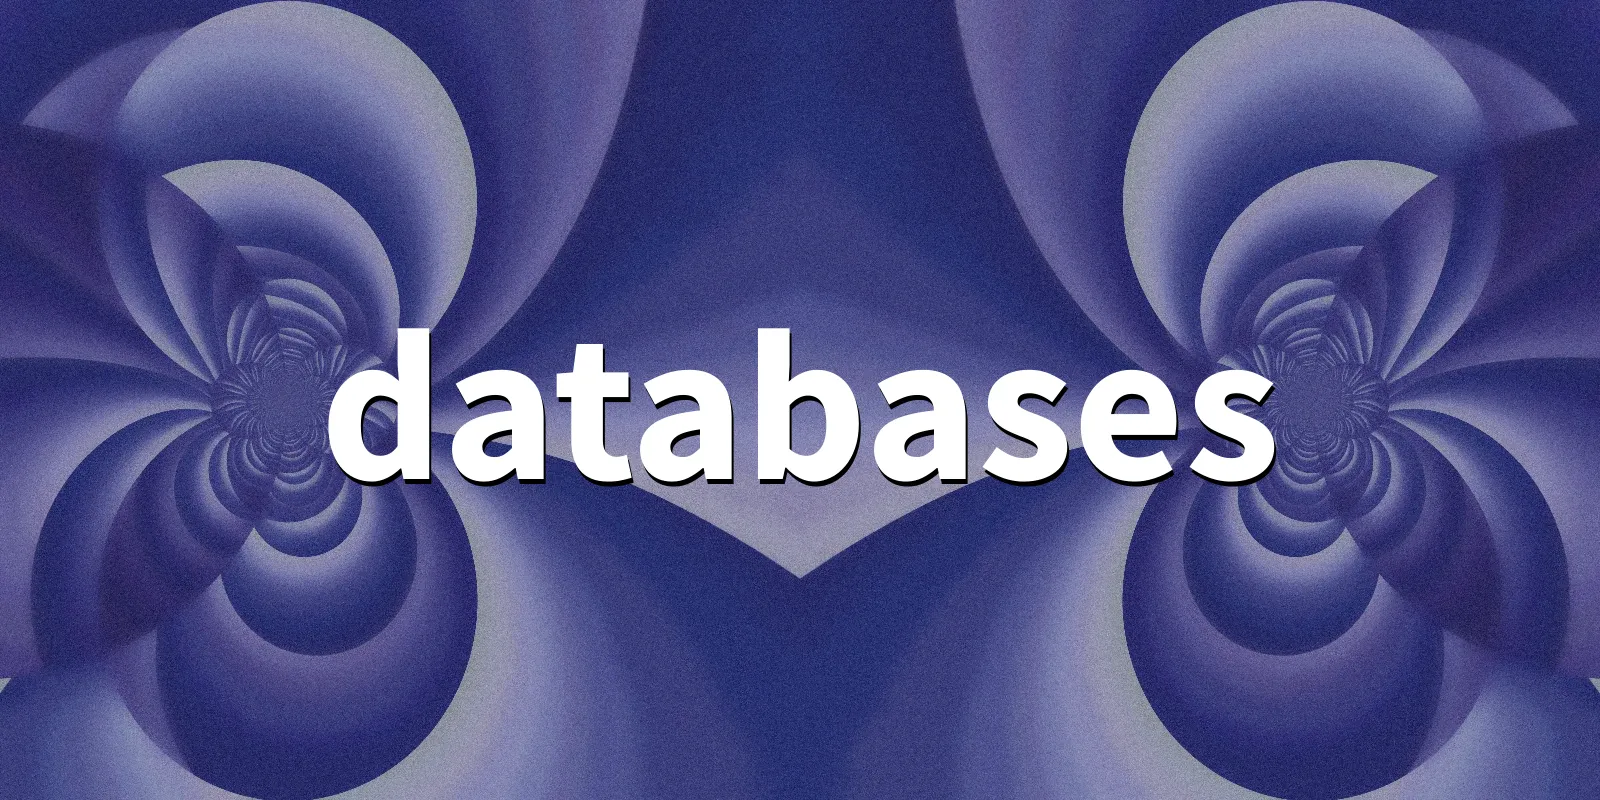 /pkg/d/databases/databases-banner.webp